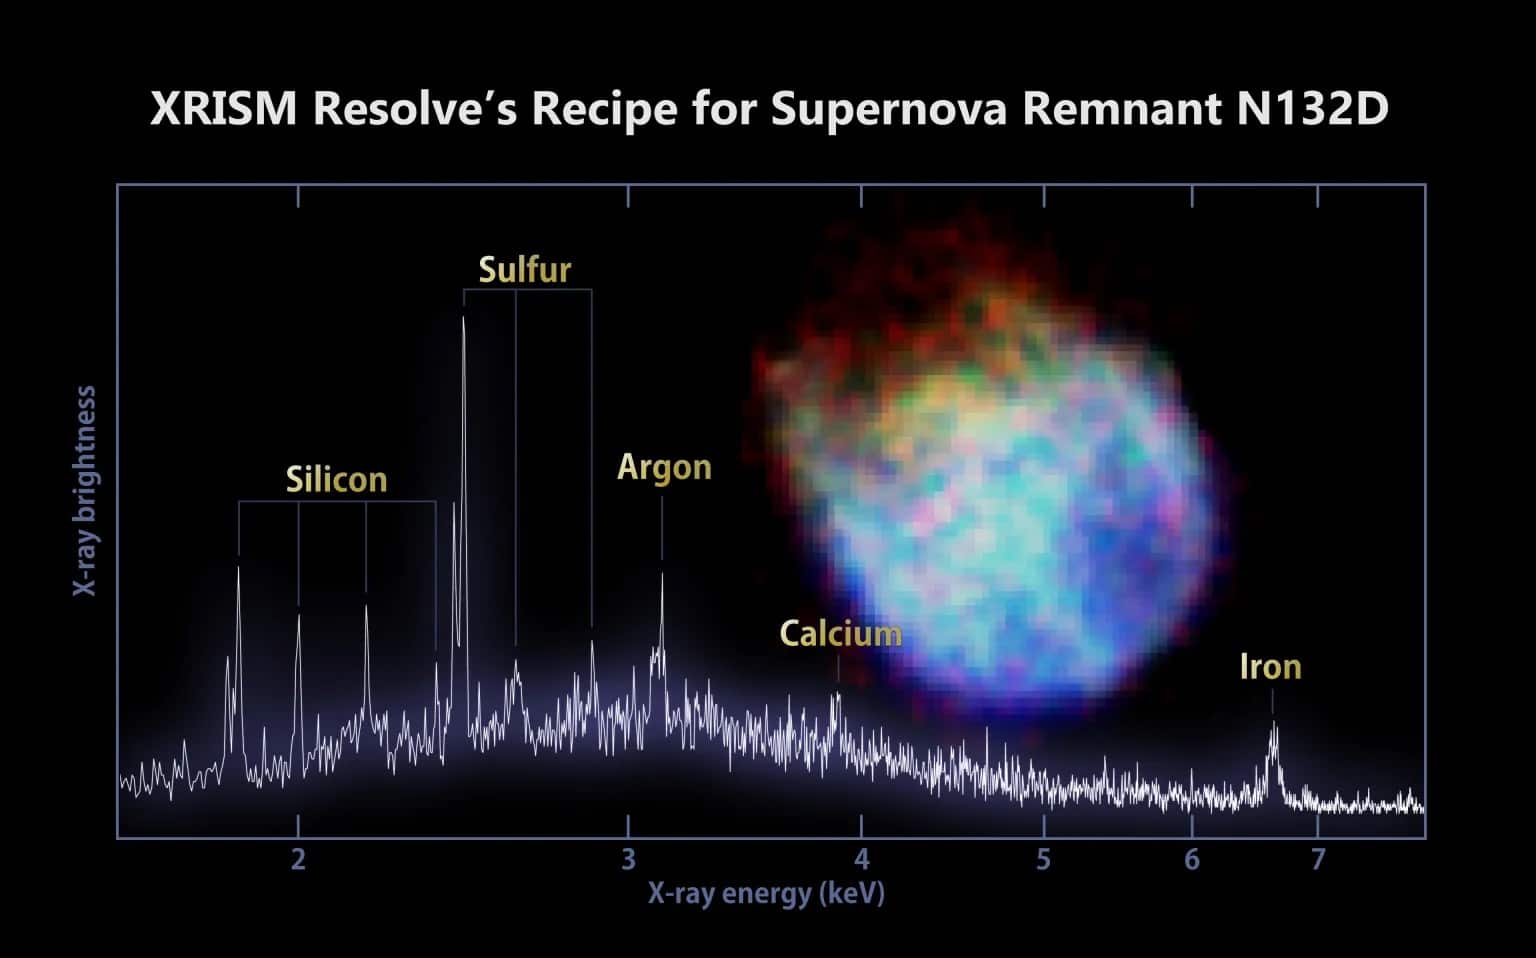 supernova remnant N132D